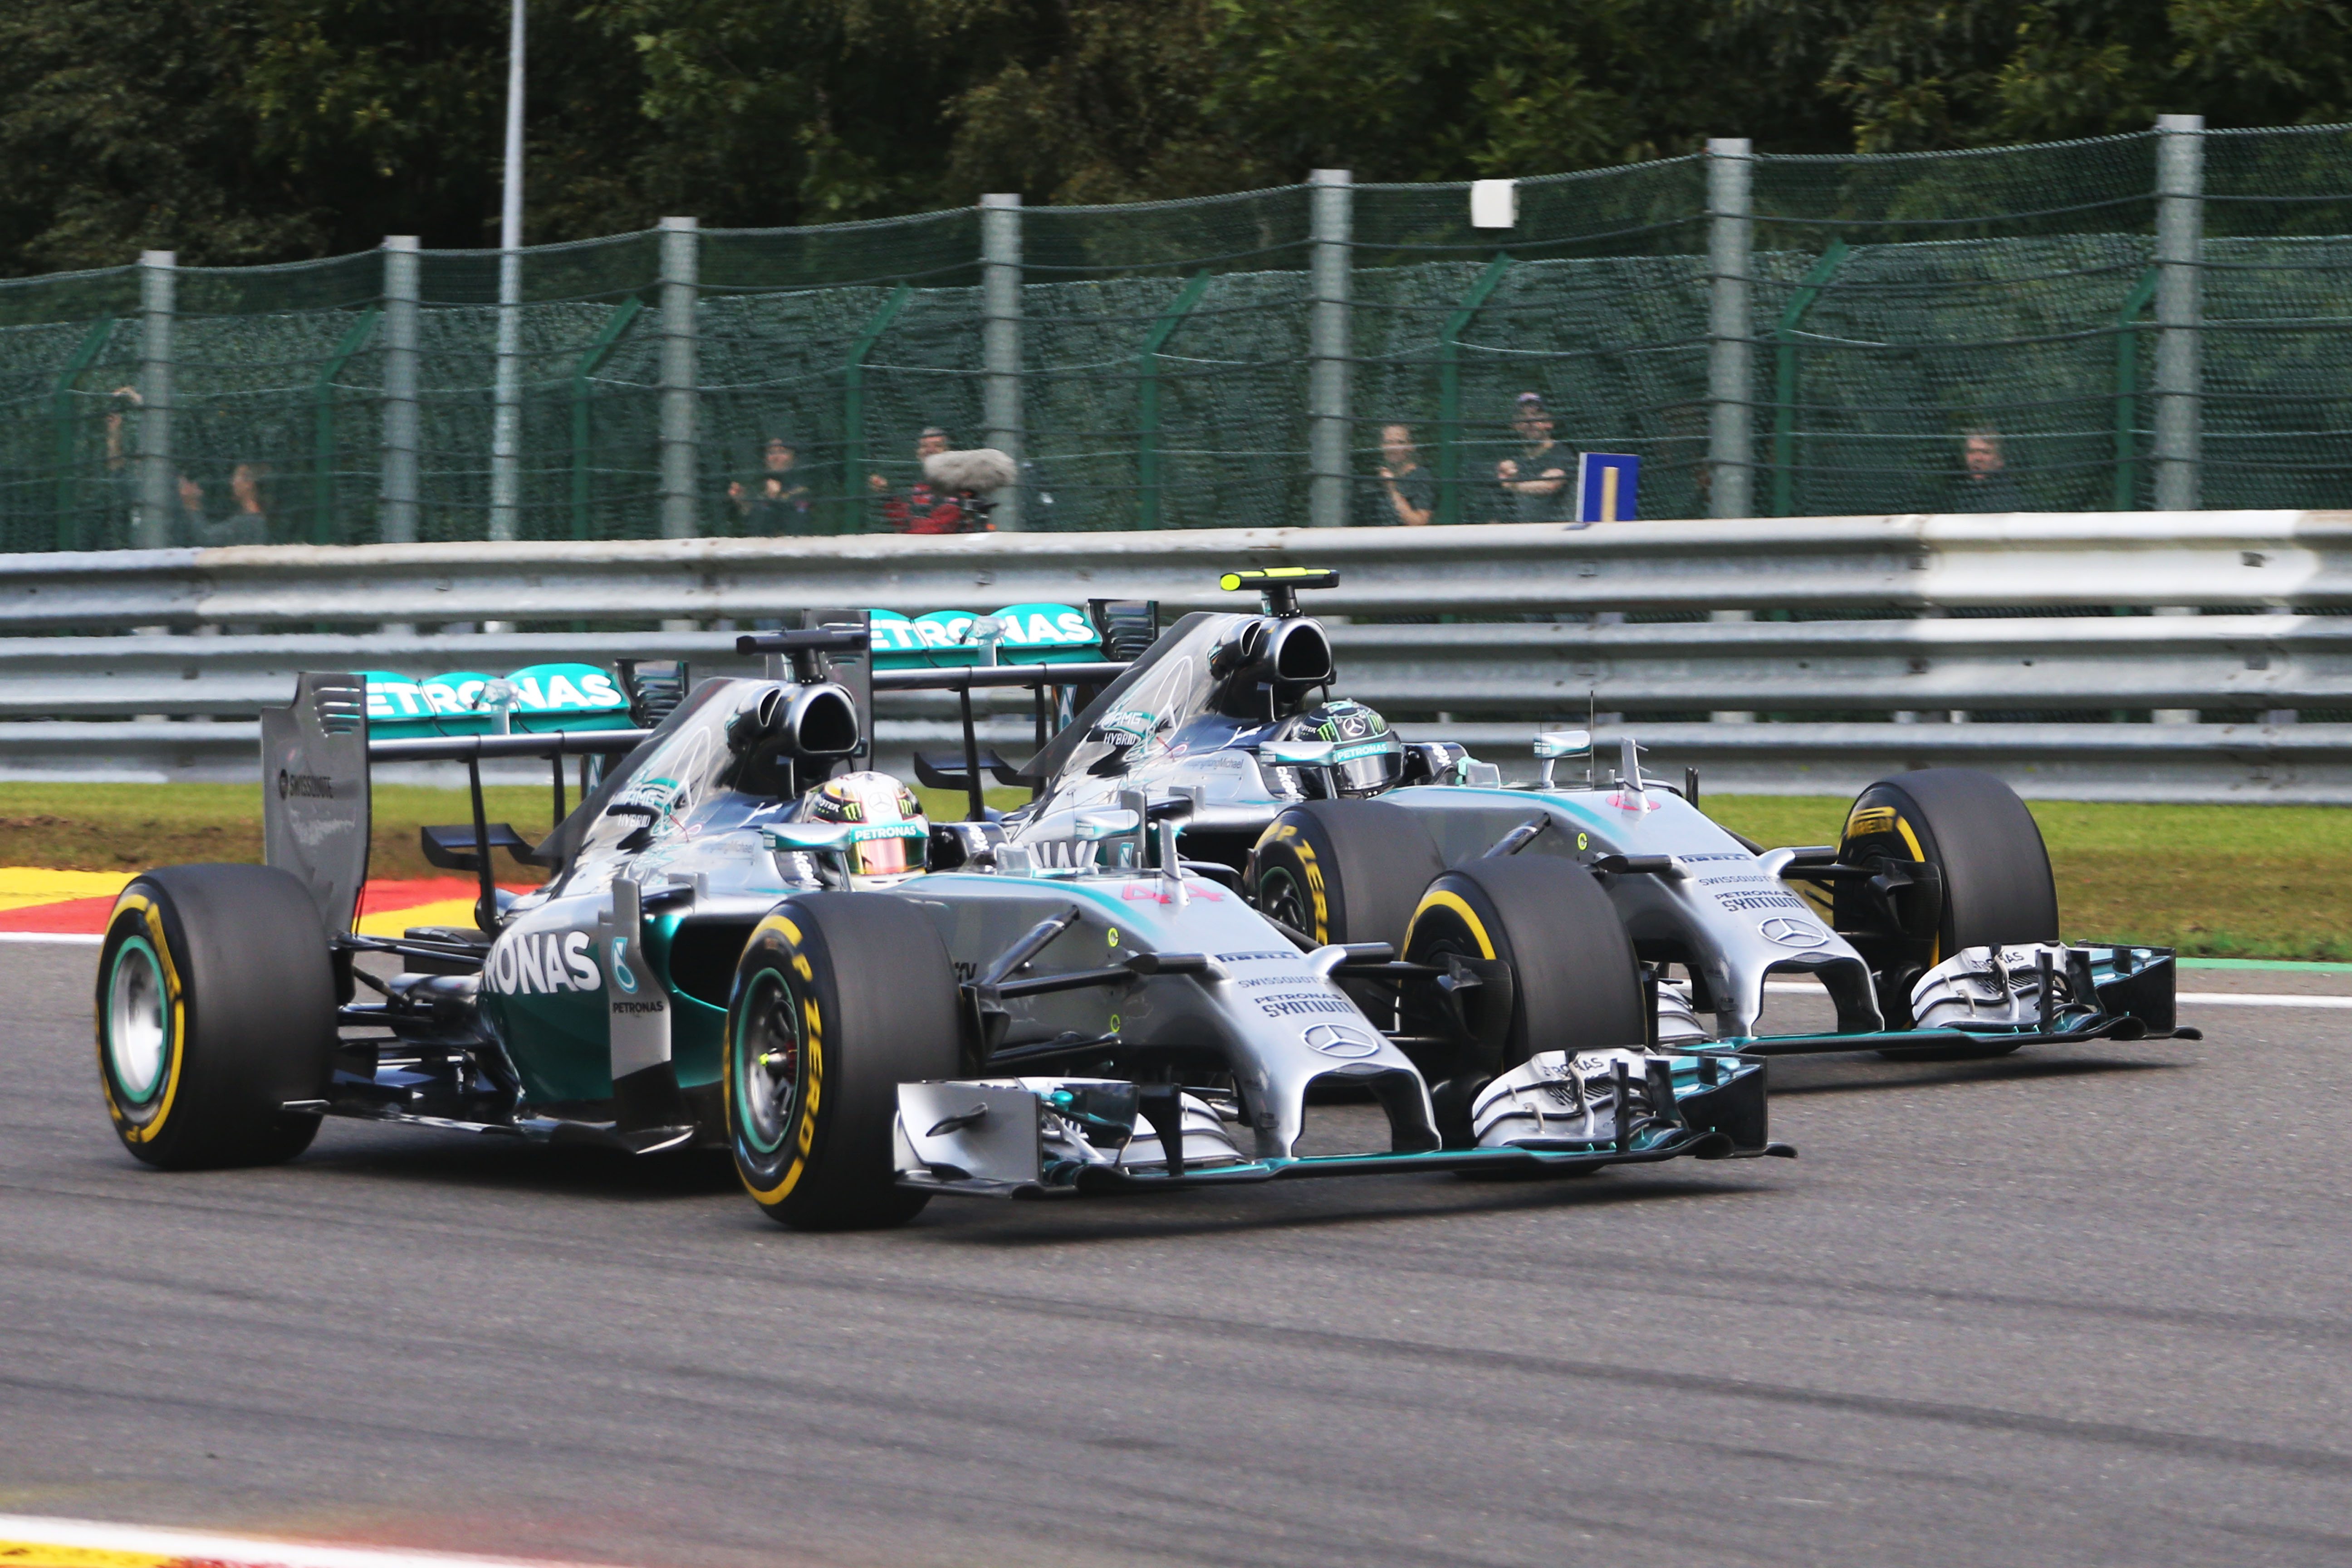 Strijdend Mercedes-duo terug naar waar rivaliteit ooit begon